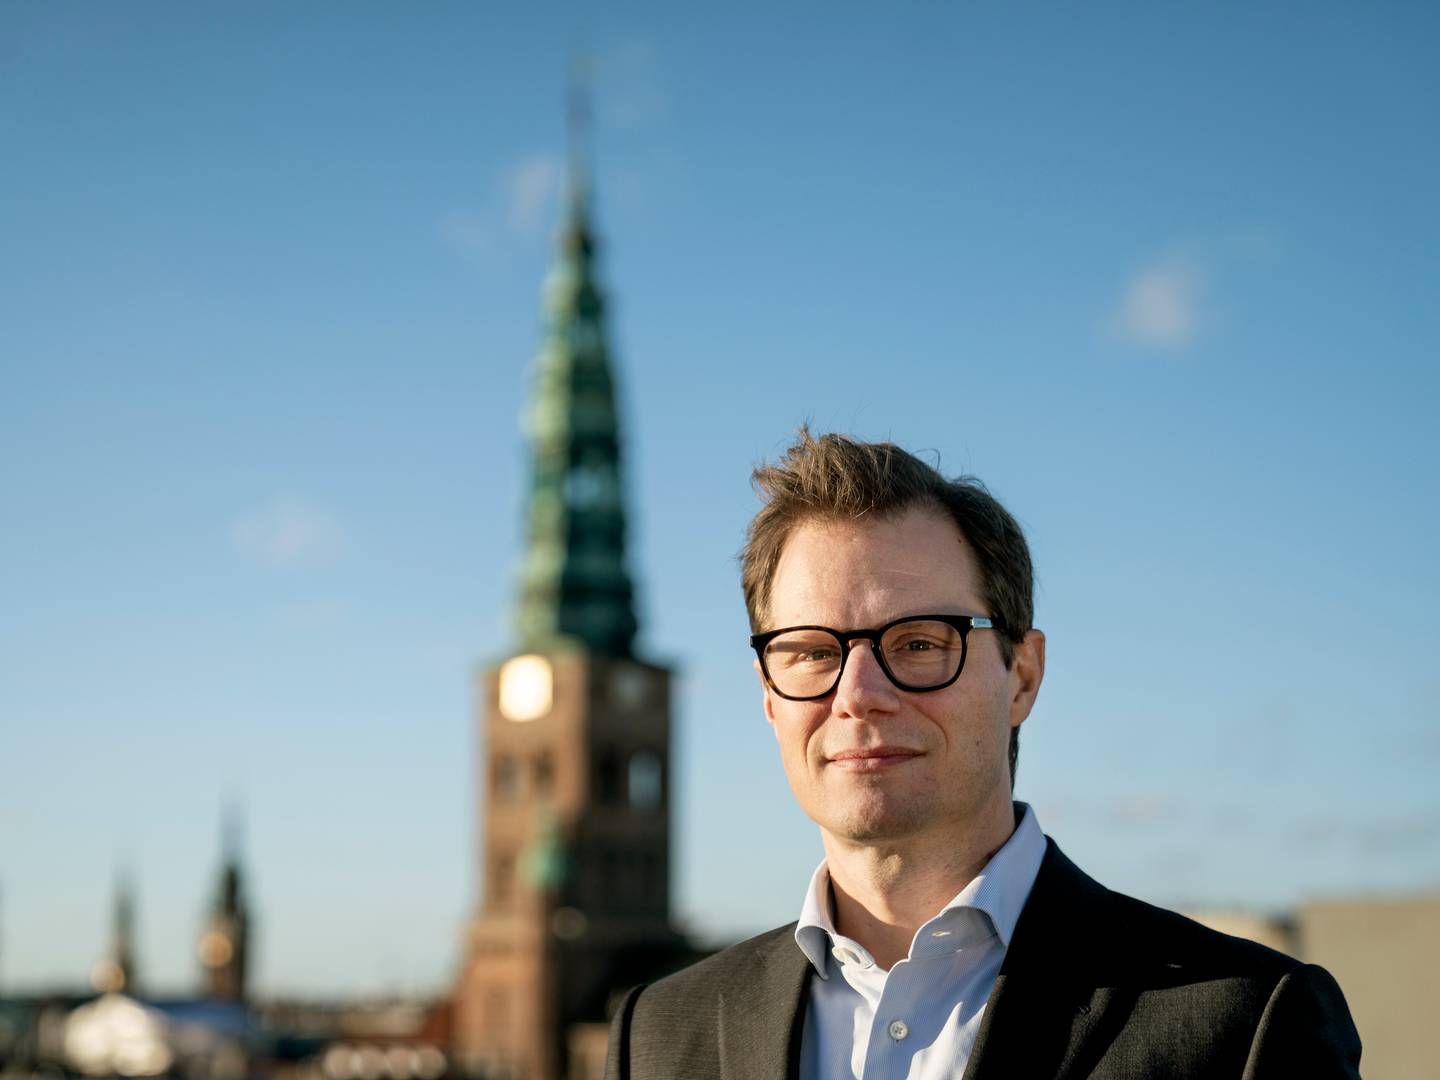 Carsten Egeriis er topchef for Danske Bank, som onsdag har præsenteret ny strategi. | Foto: Stine Bidstrup/Carsten Egeriis/Ritzau Scanpix